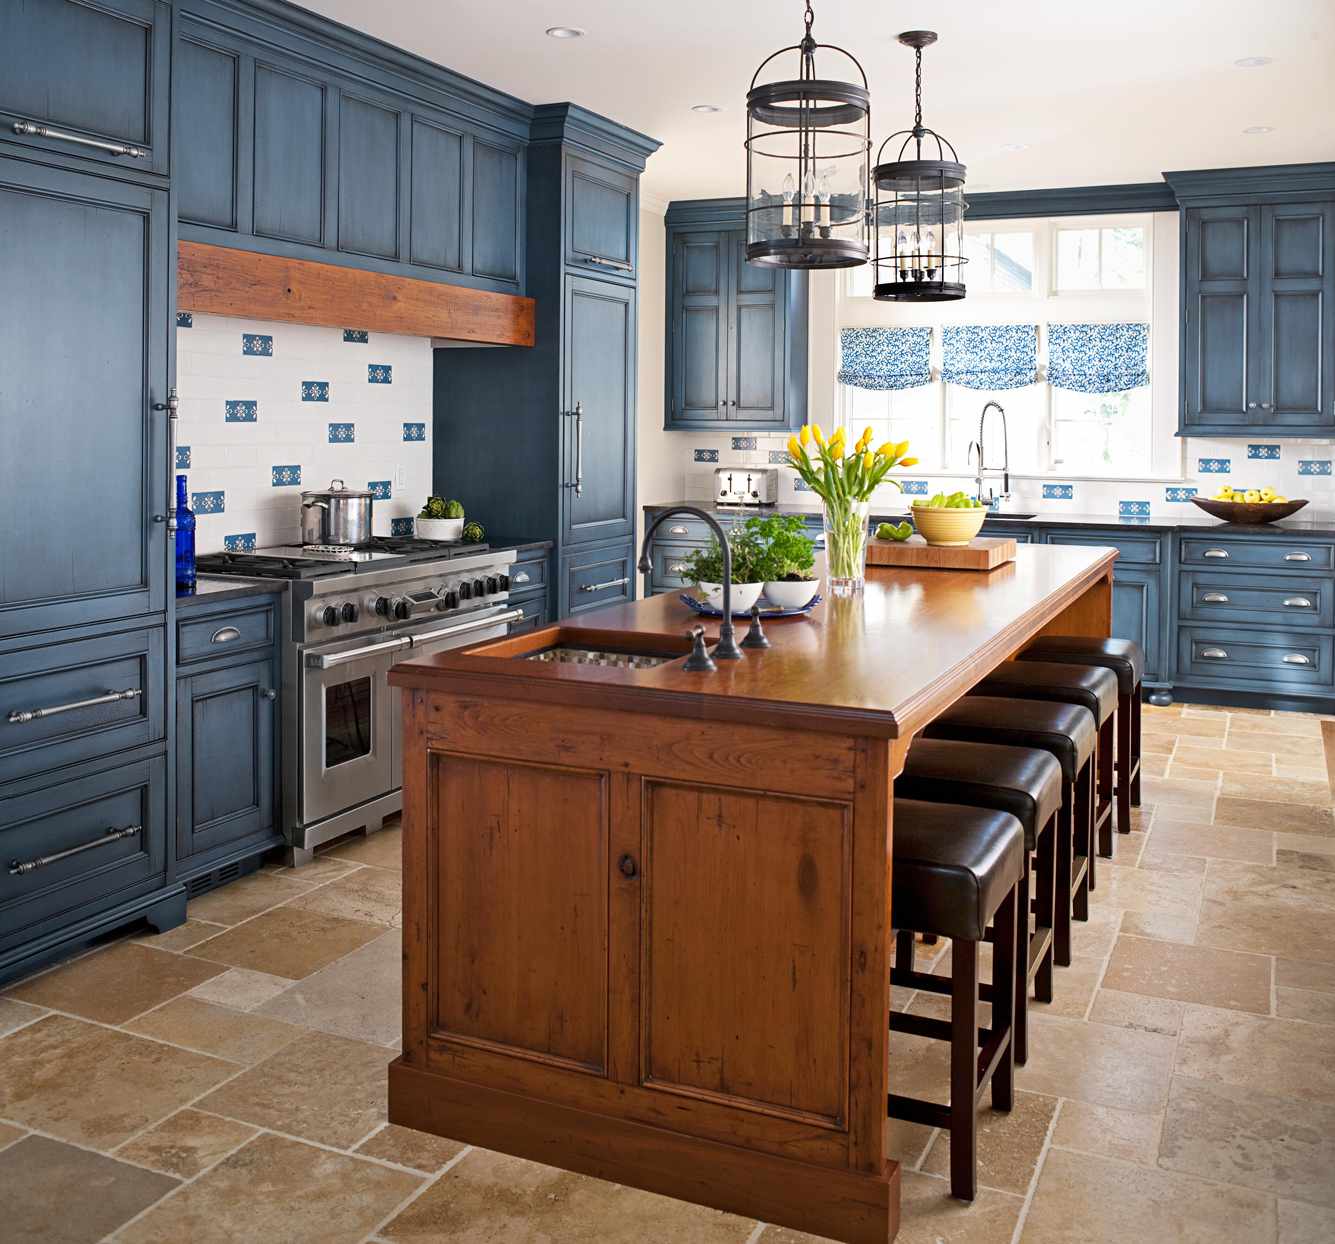 textured wood island in blue kitchen